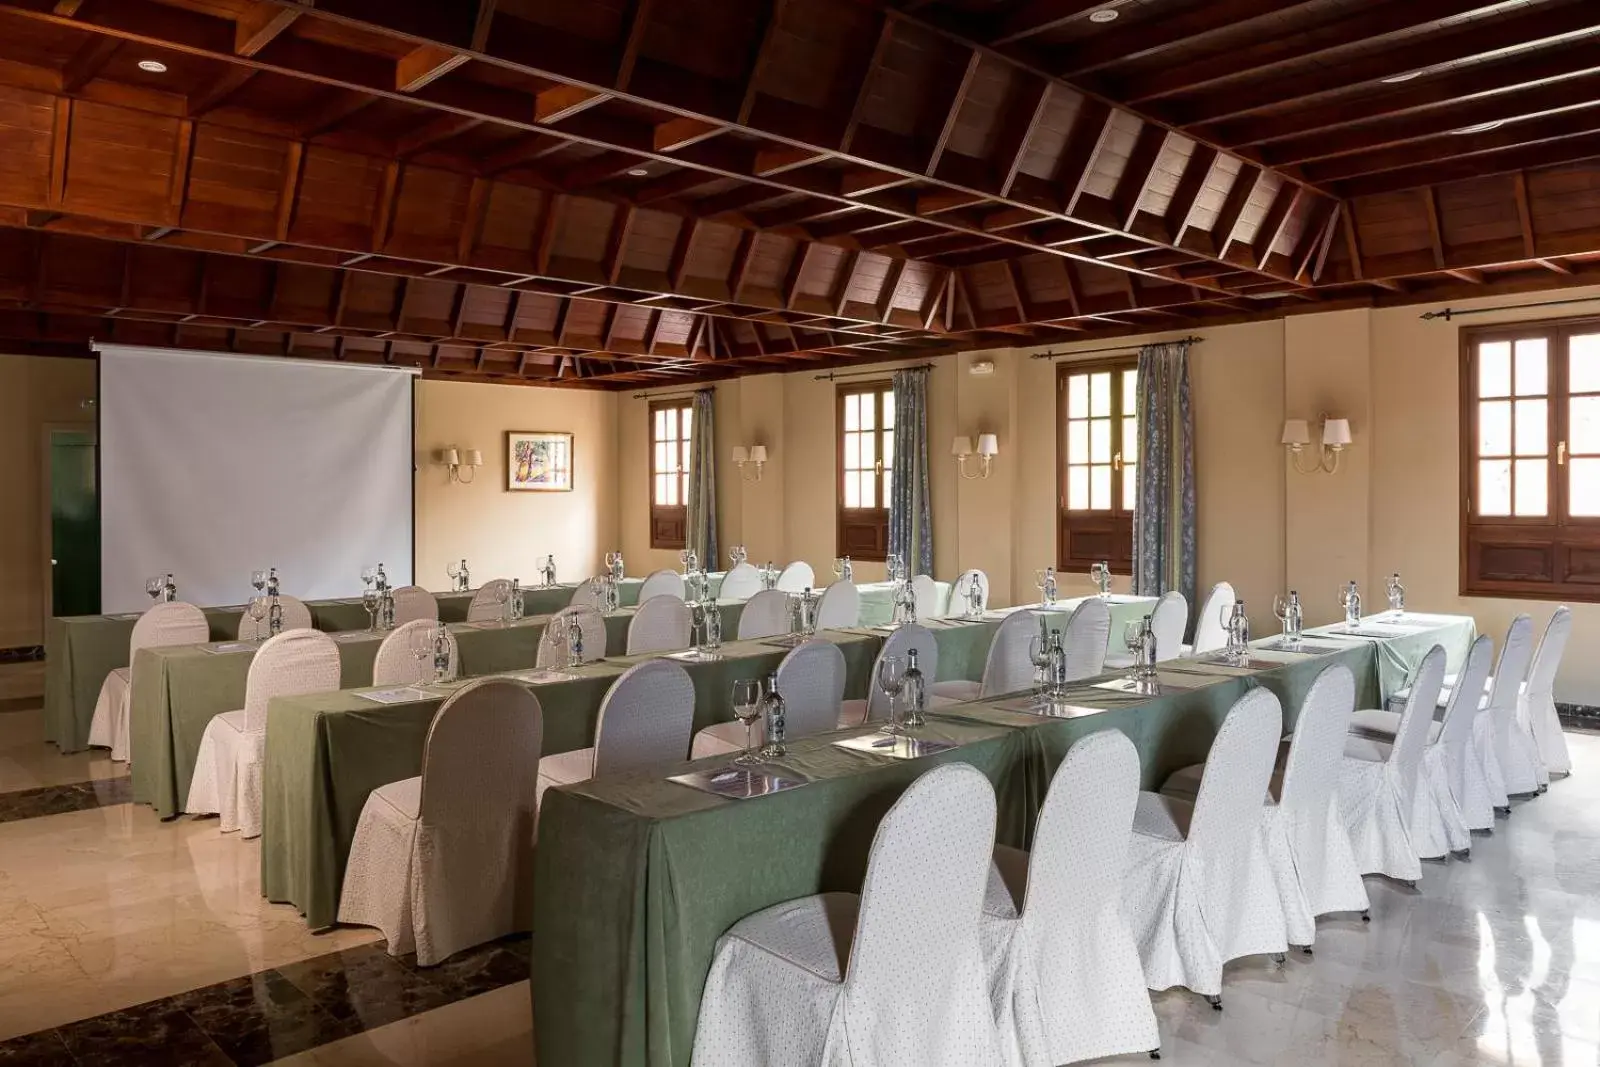 Banquet/Function facilities, Banquet Facilities in Parador de La Palma